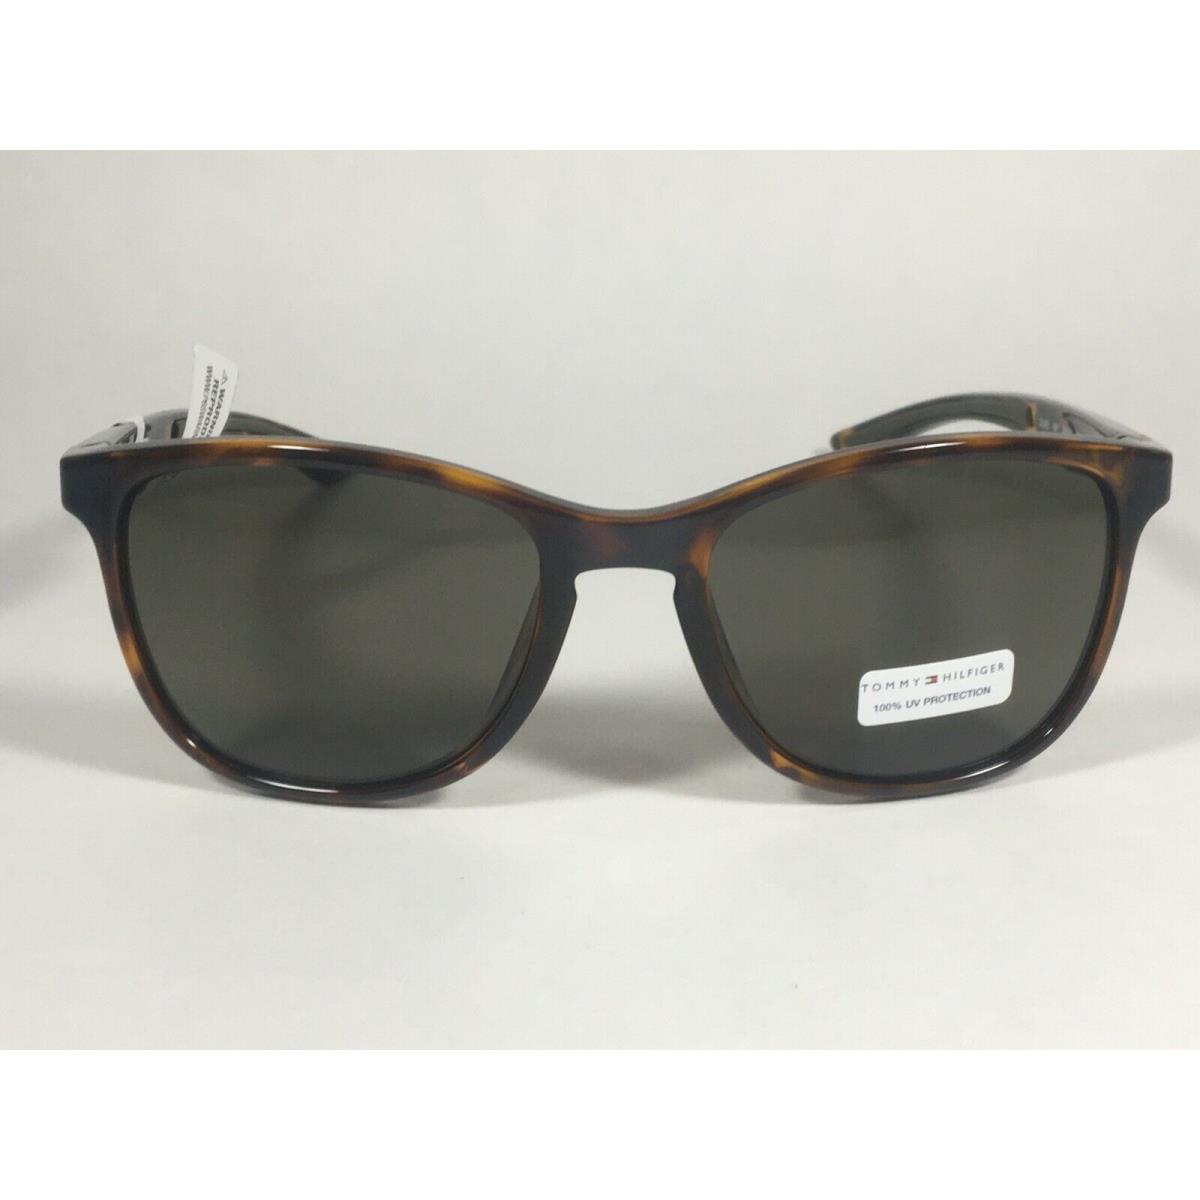 Tommy Hilfiger Duke MP OM481 Sport Sunglasses Brown Tortoise Frame Green Lens